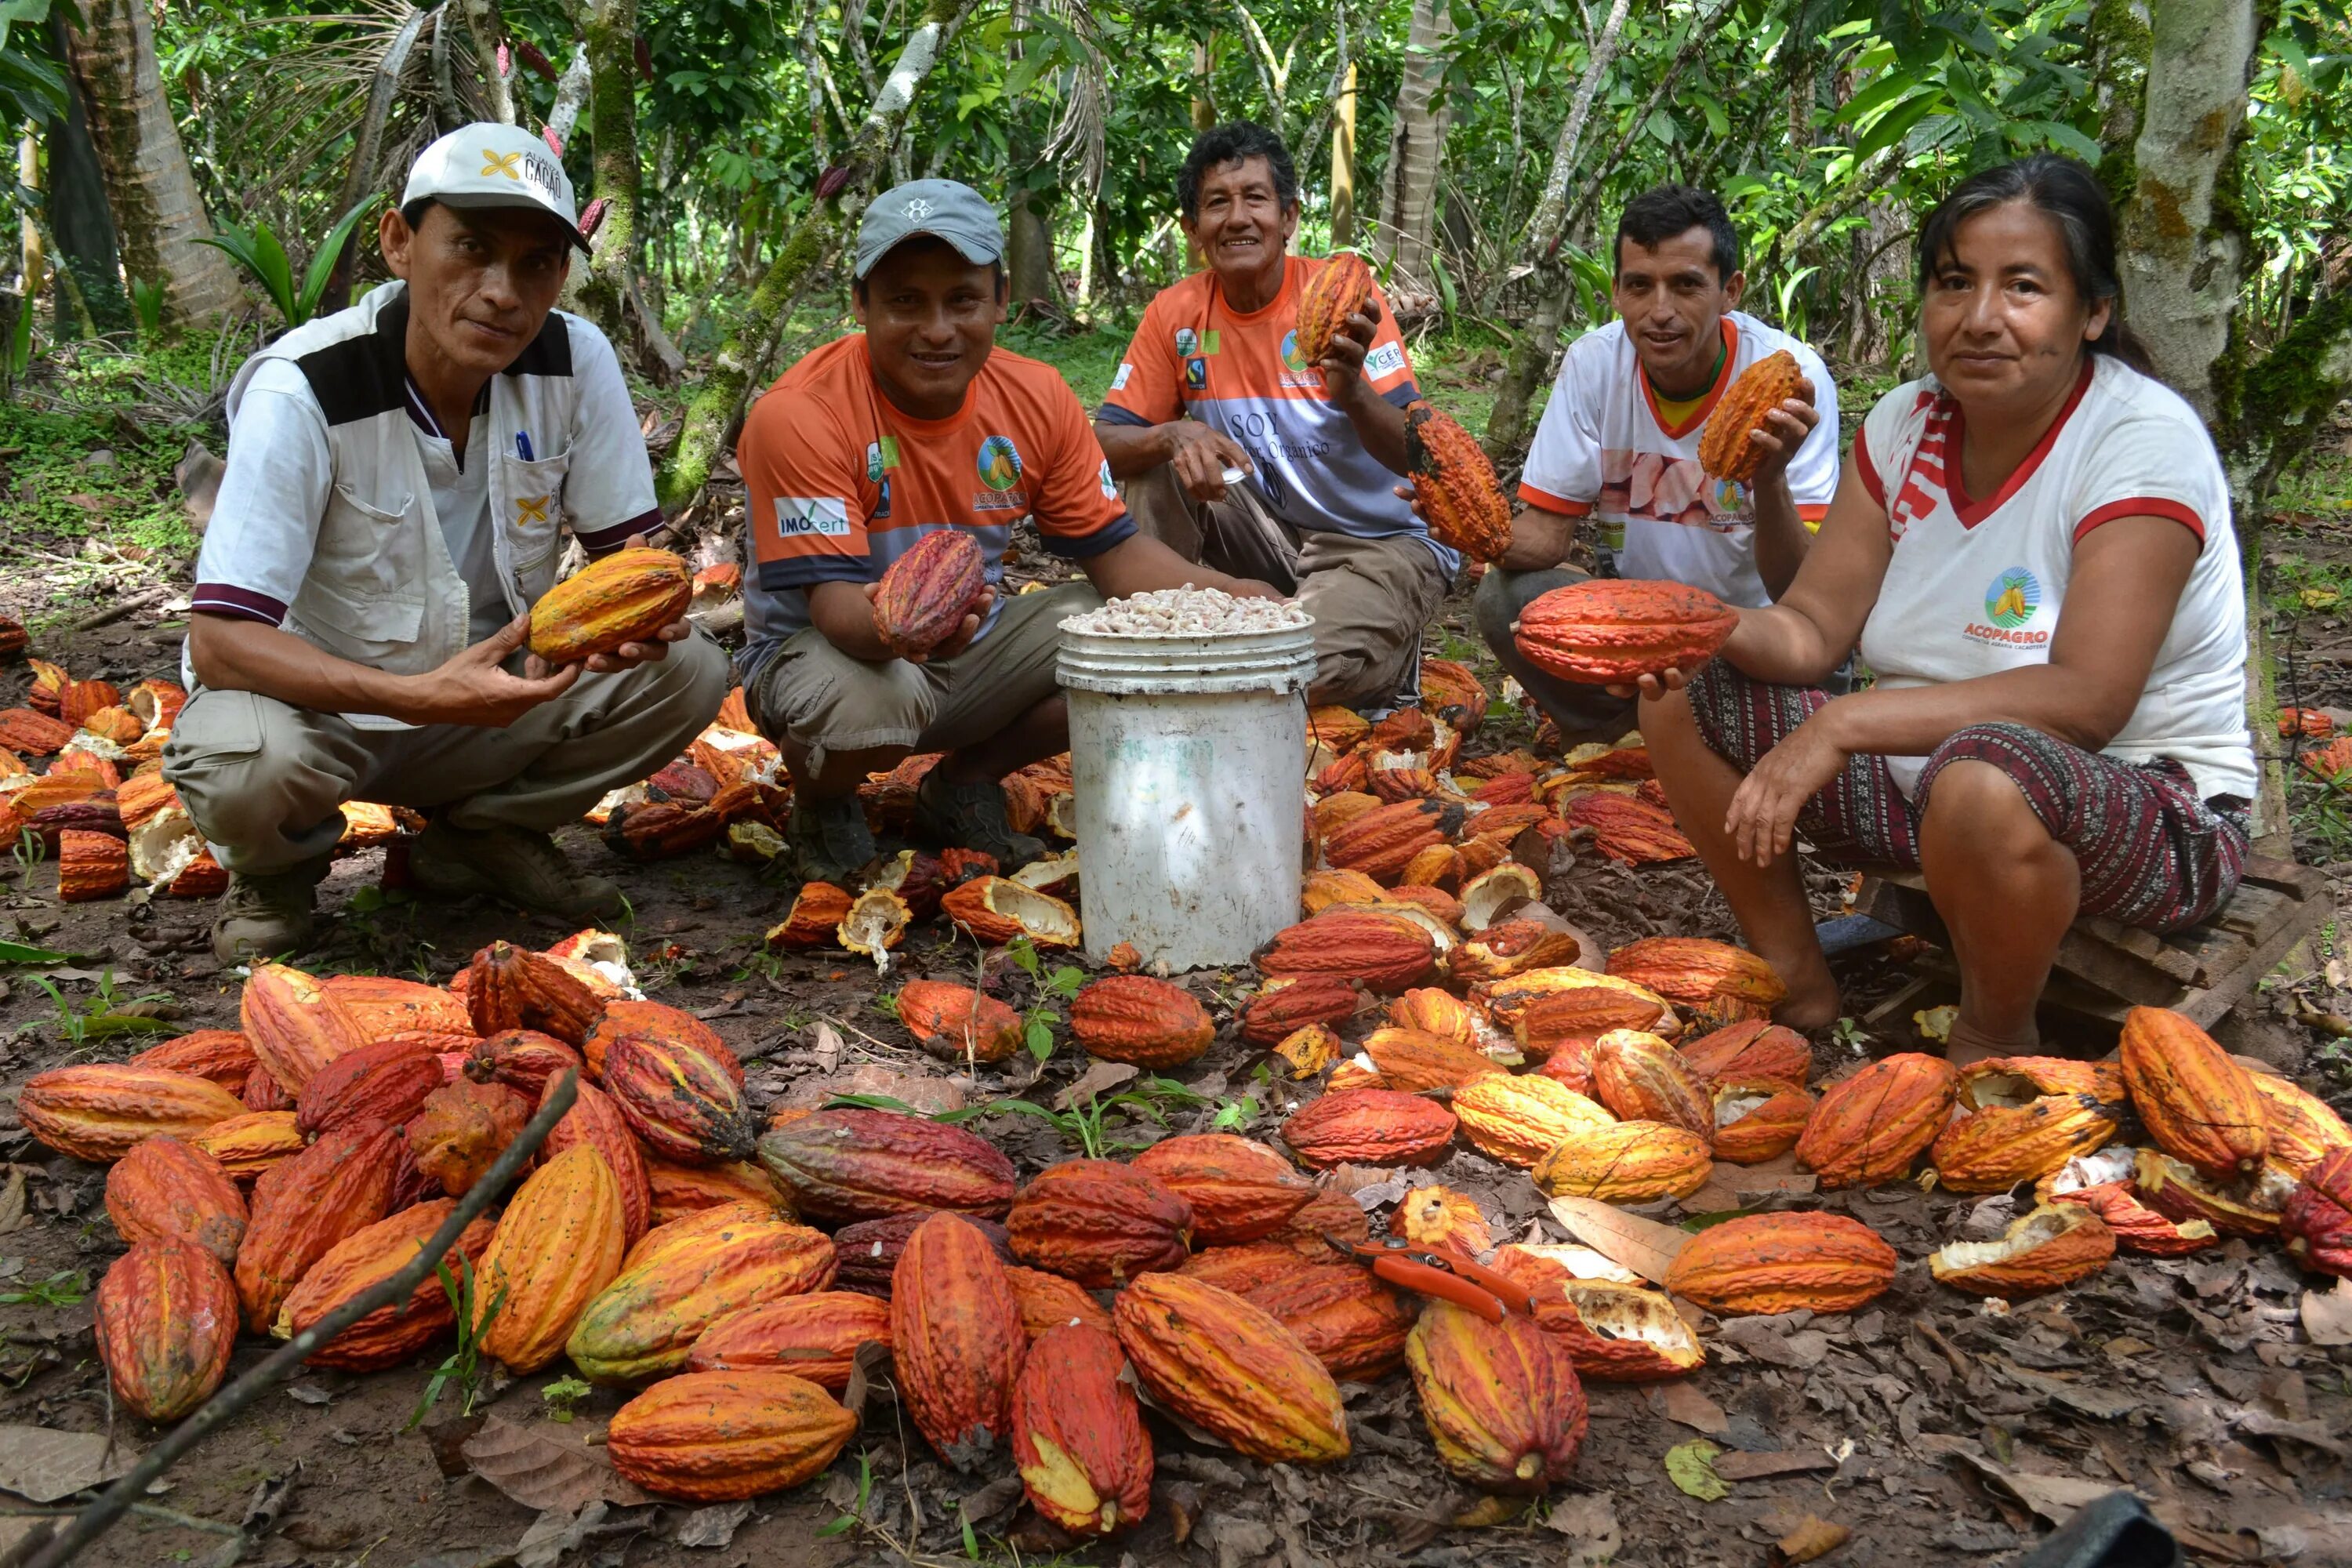 Люди живущие в экваториальном климате. Кот ДИВУАР плантации какао. Плантации какао бобов в Бразилии. Южная Америка плантации какао. Венесуэла плантации какао.